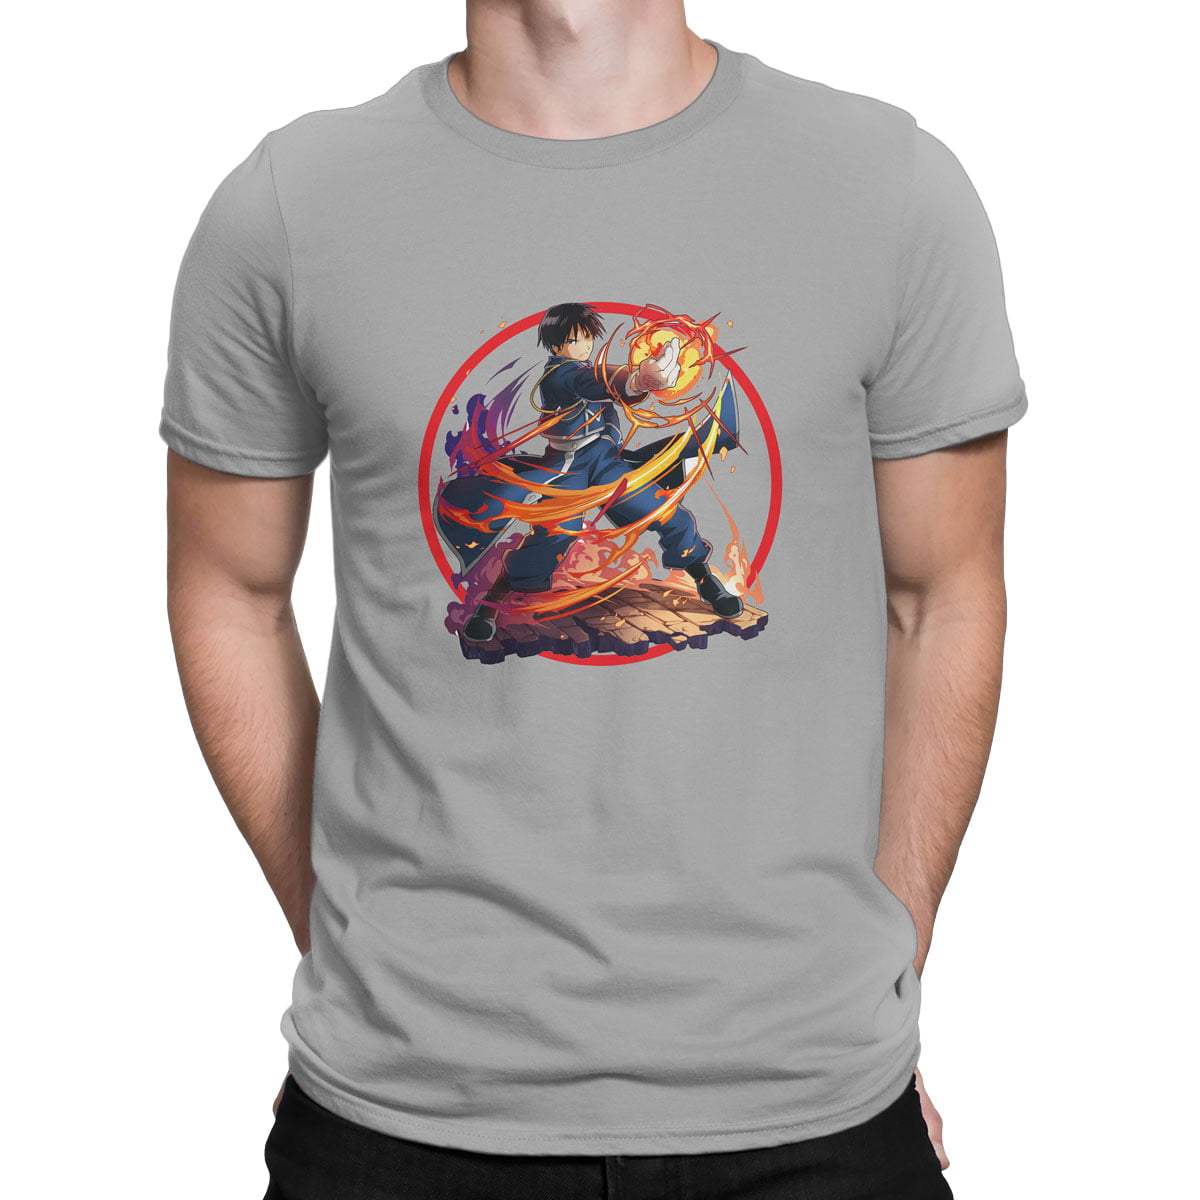 Fullmetal alchemist no6 tisort erkek g - fullmetal alchemist roy mustang baskılı erkek t-shirt - figurex